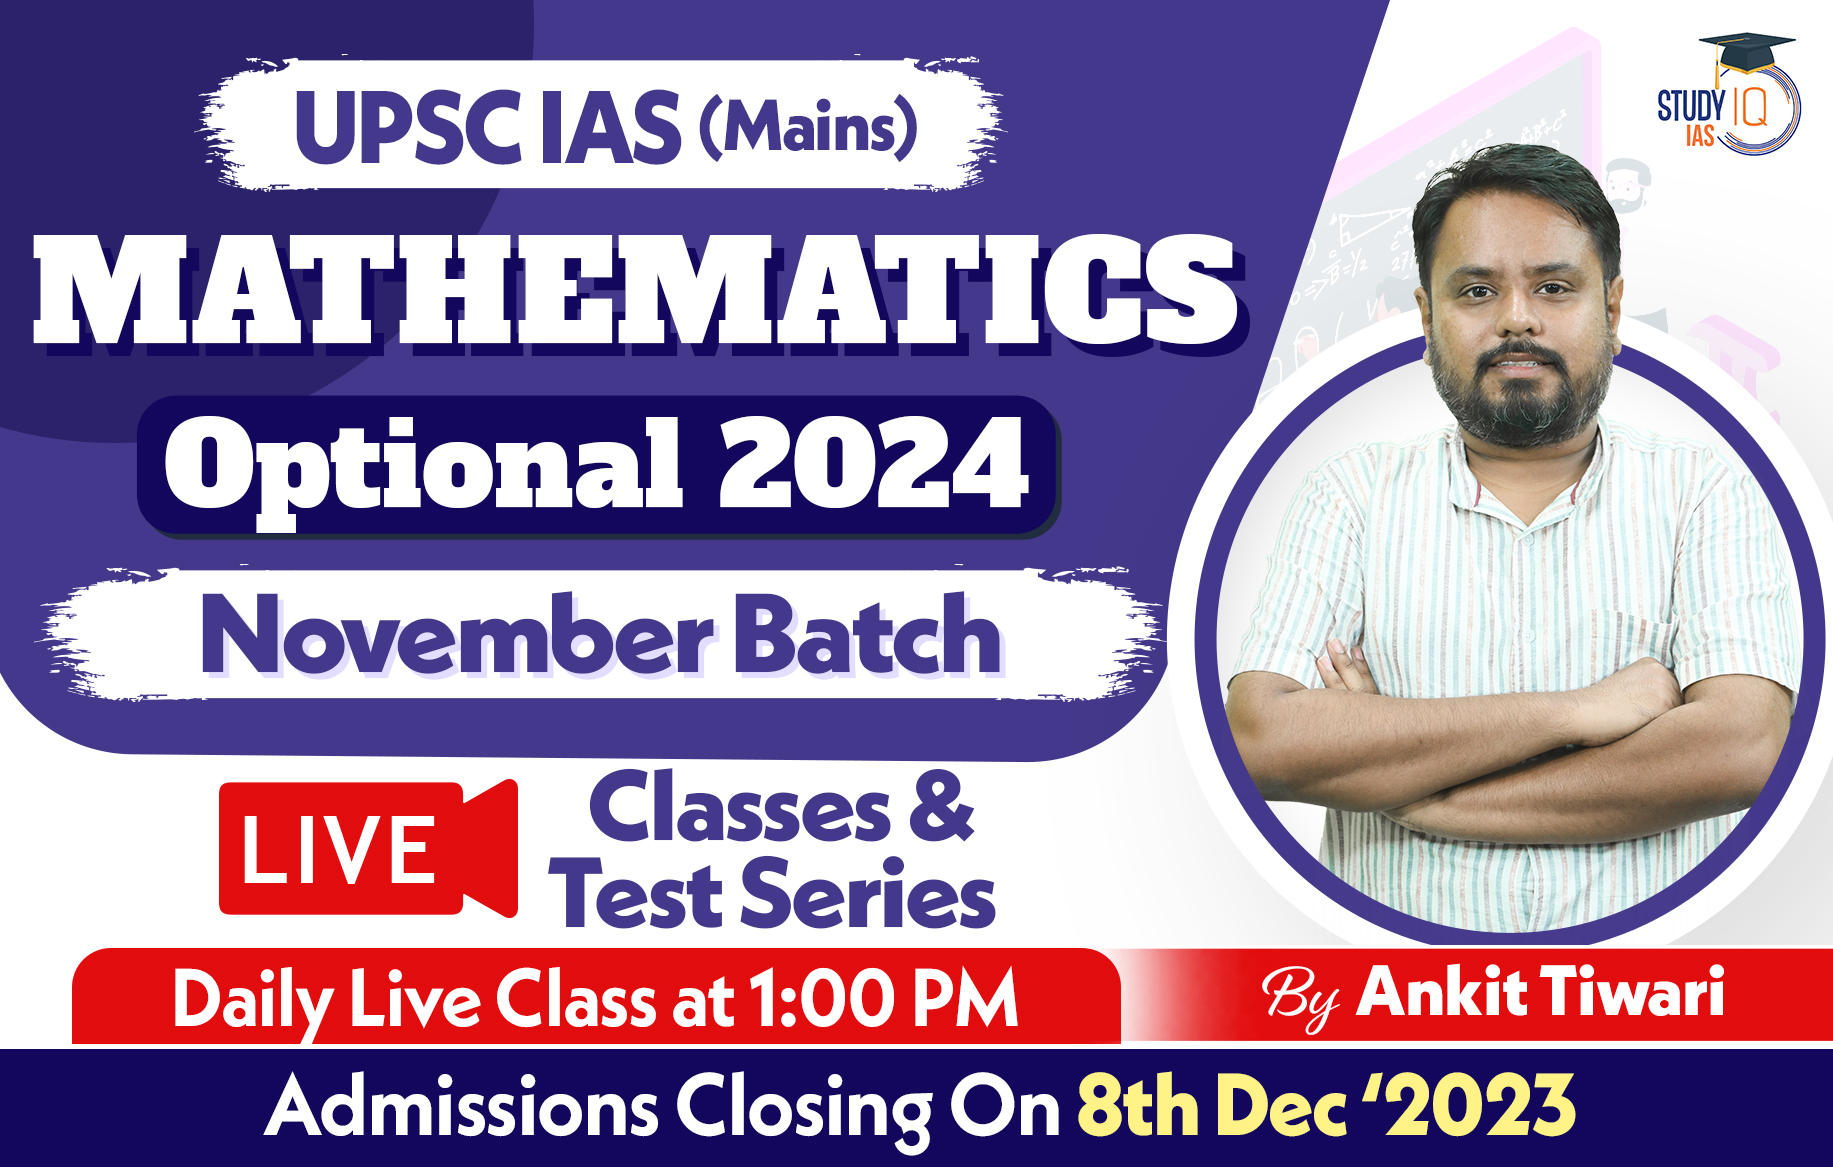 UPSC IAS (Mains) Mathematics Optional Live 2024 (Comprehensive) November Batch